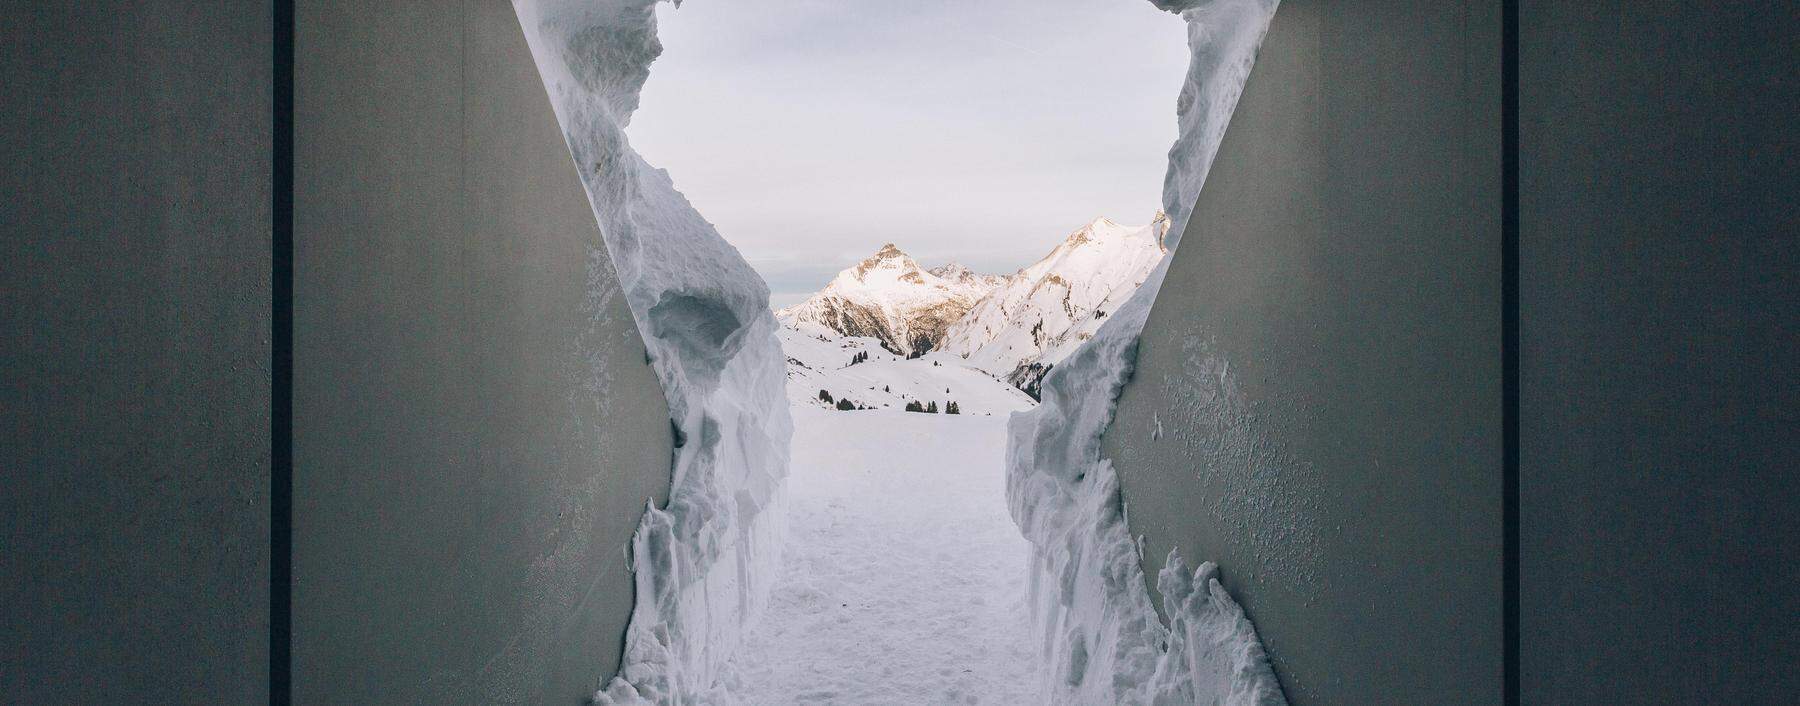 Mitten im Schnee: James Turrells begehbare Installation „Skyspace“ schmiegt sich in die Landschaft bei Lech.